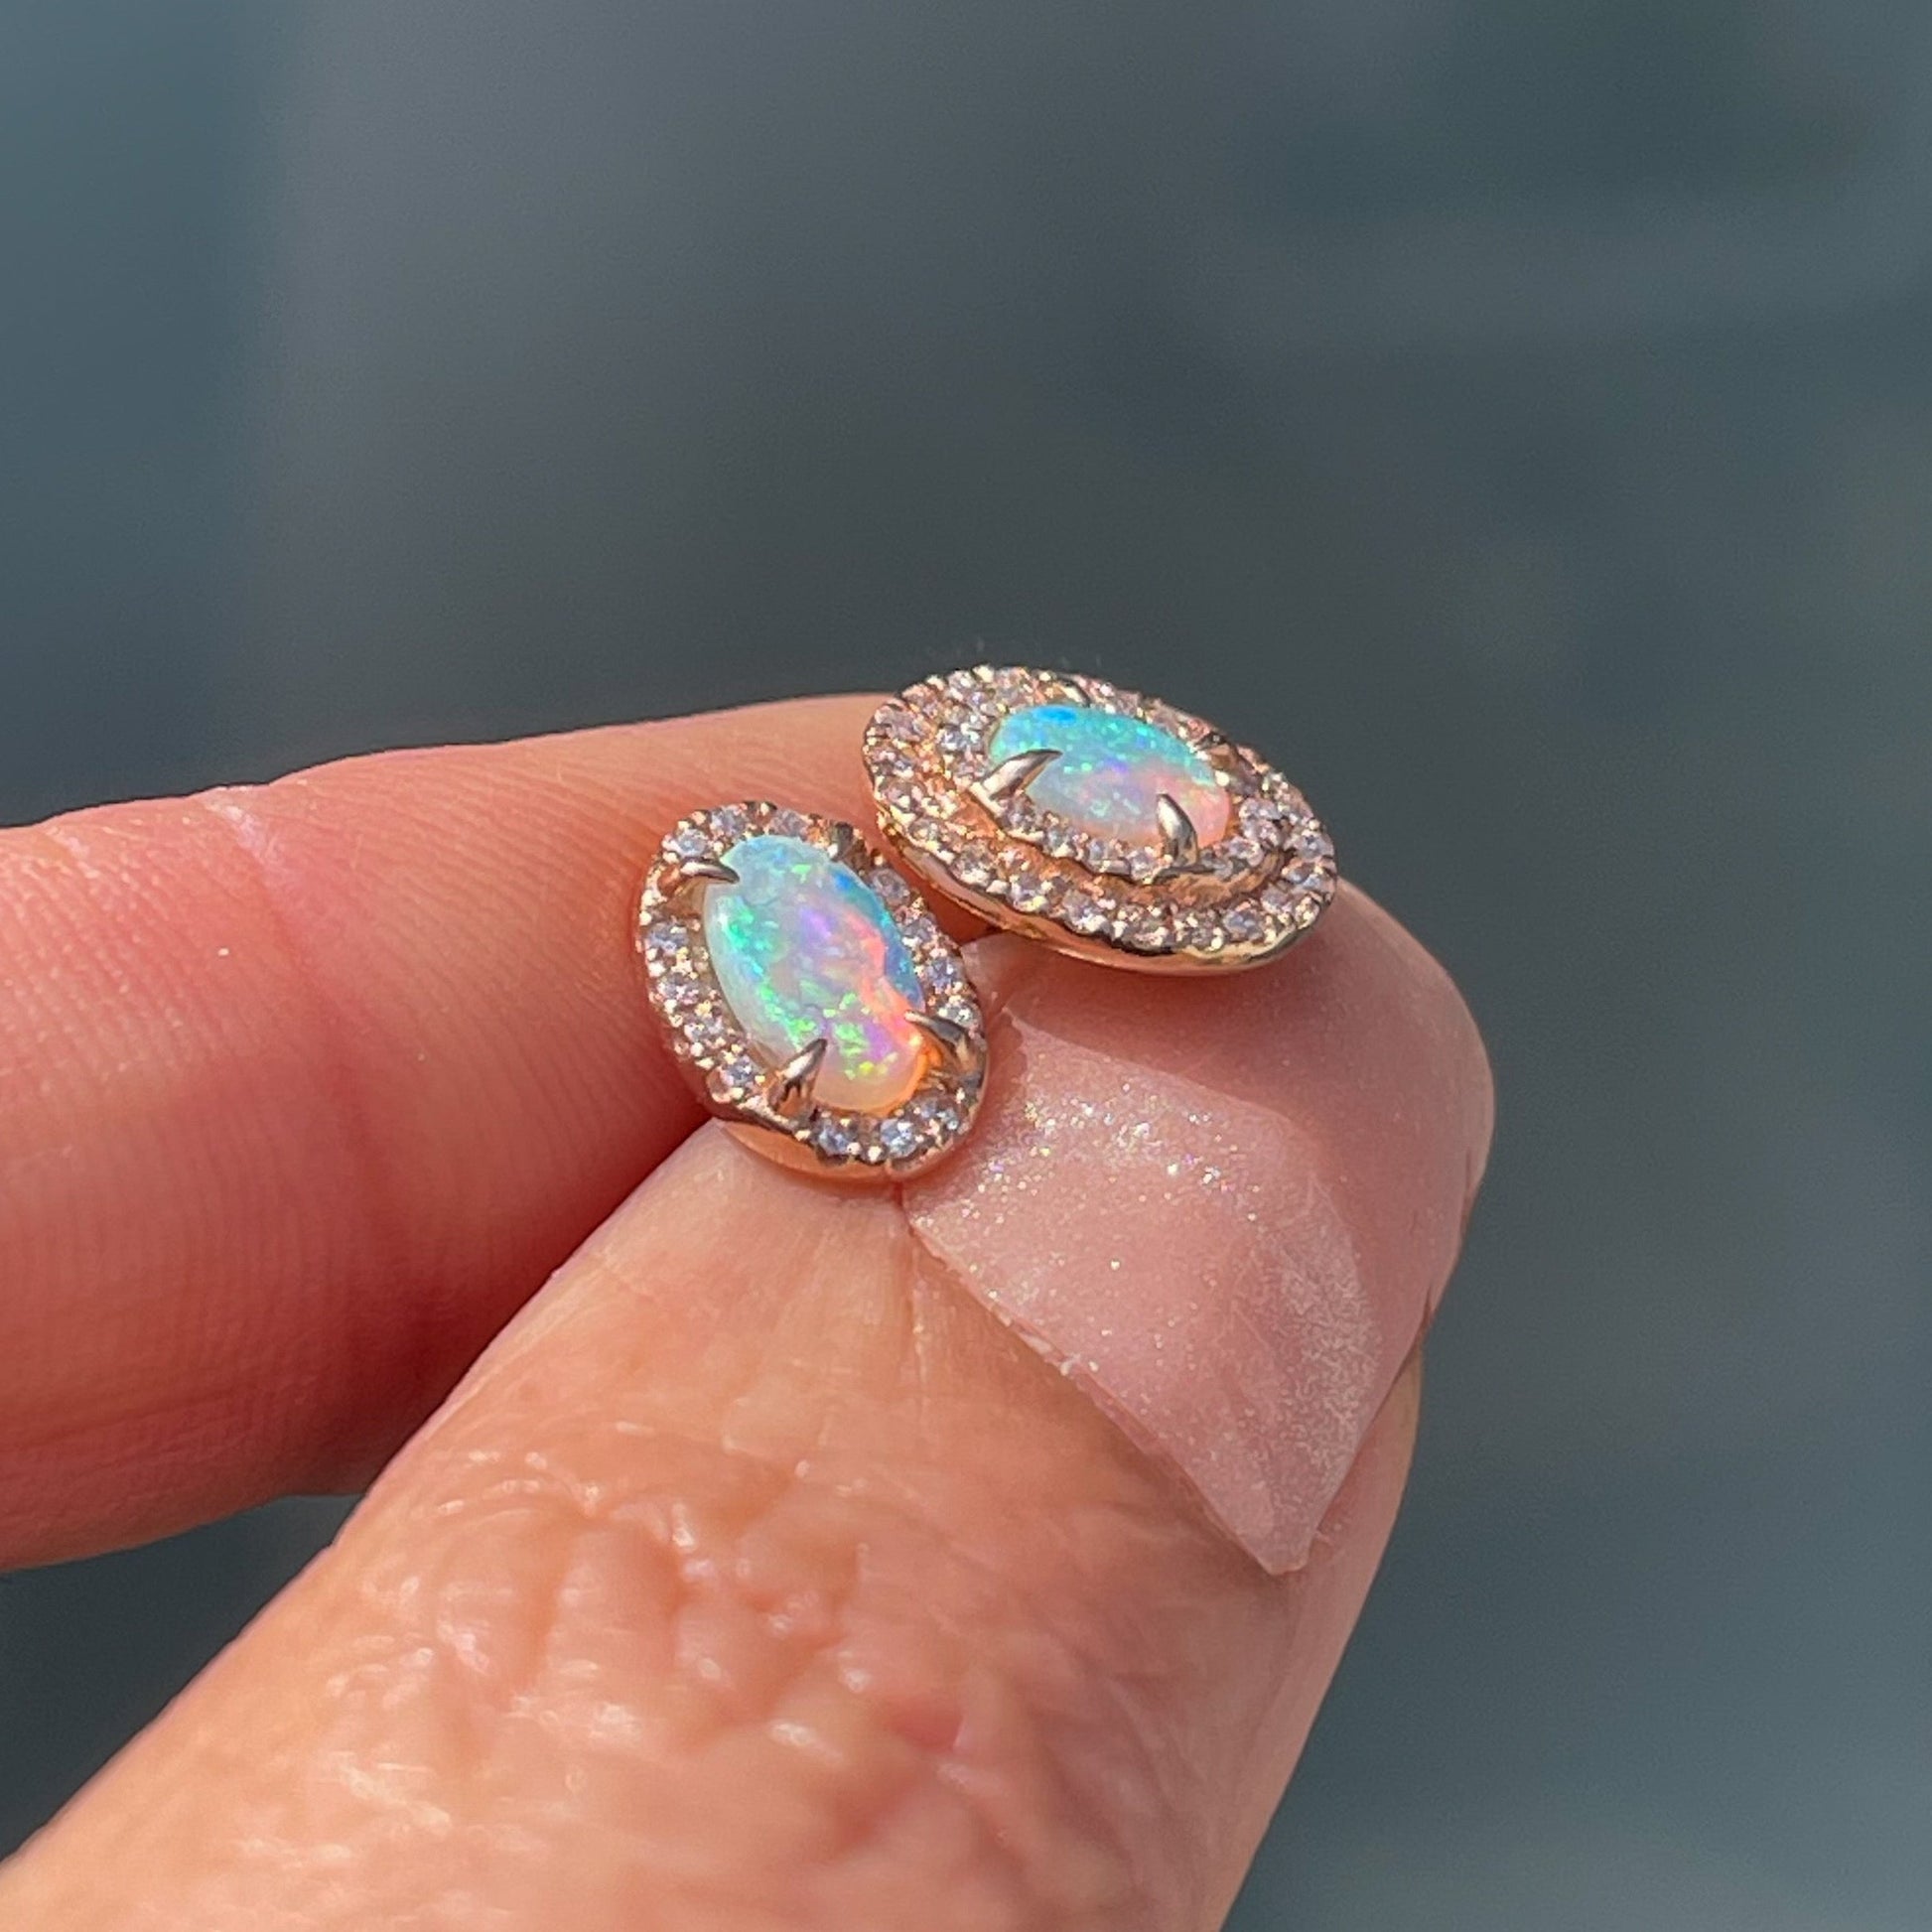 A profile view of Australian Opal Earrings by NIXIN Jewelry showing the low profile of the opal stud earrings.